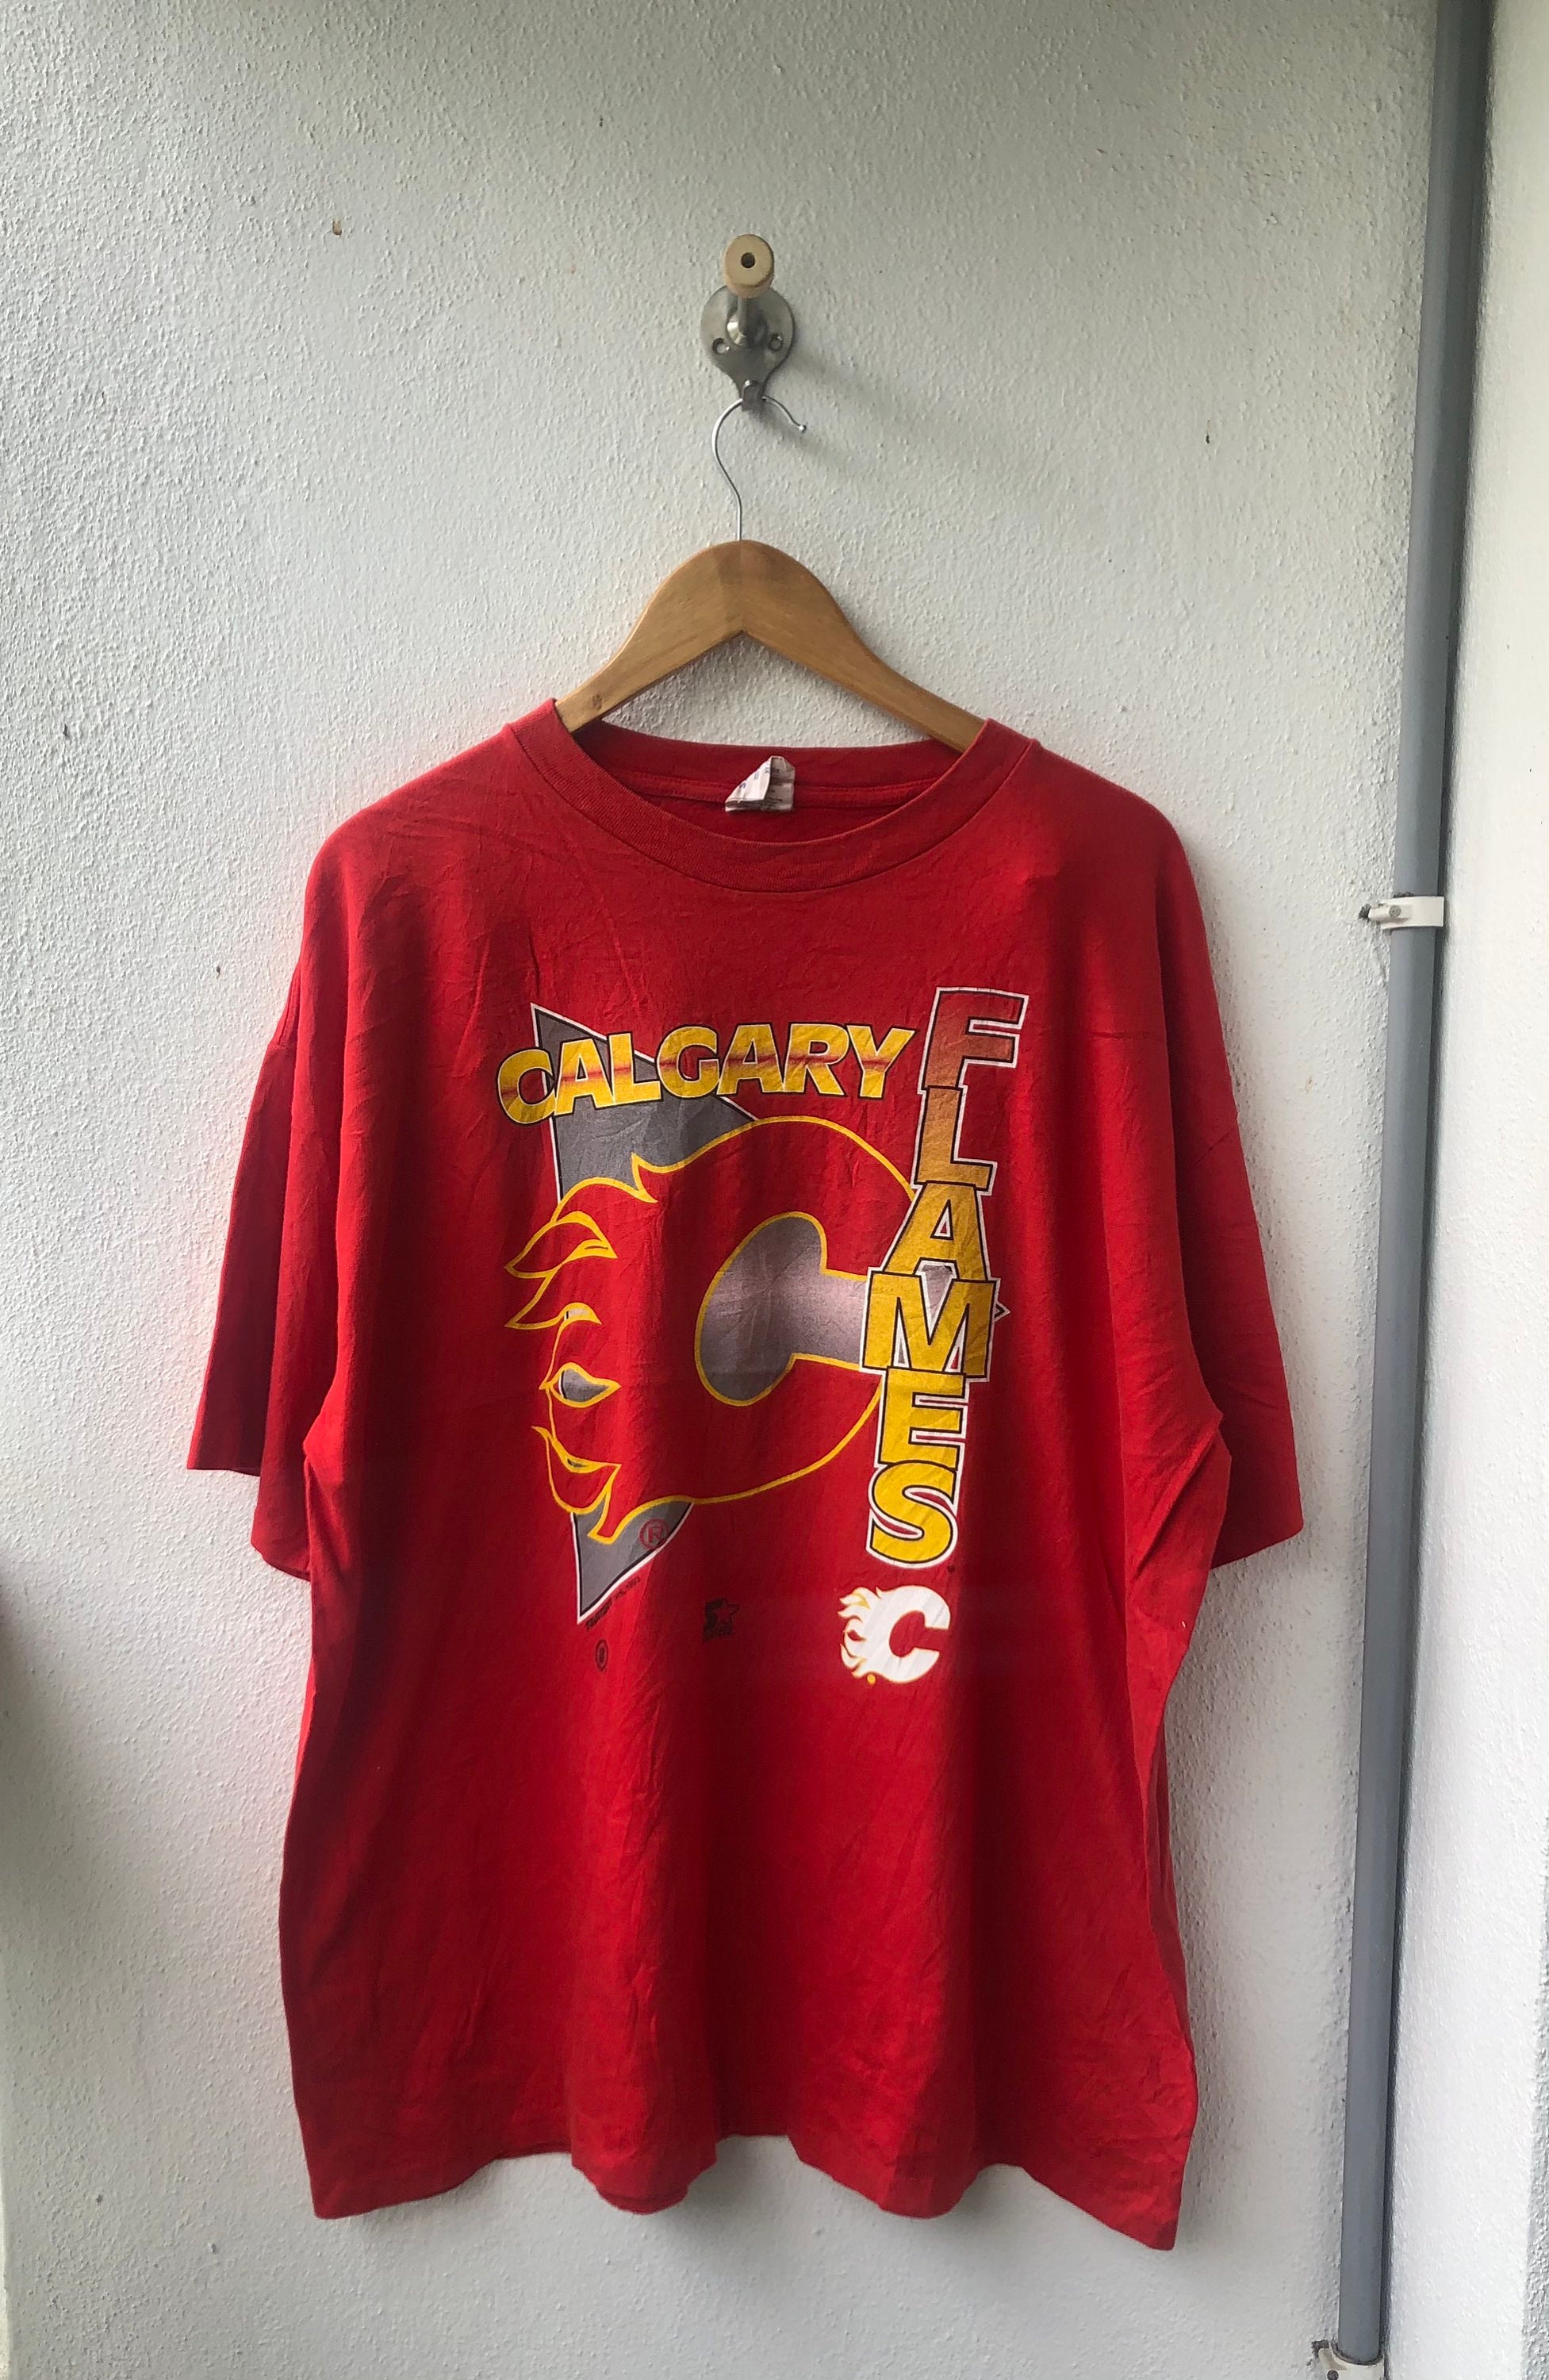 Vintage Original 90s Calgary Flames 1993 NHL T-shirt - Etsy